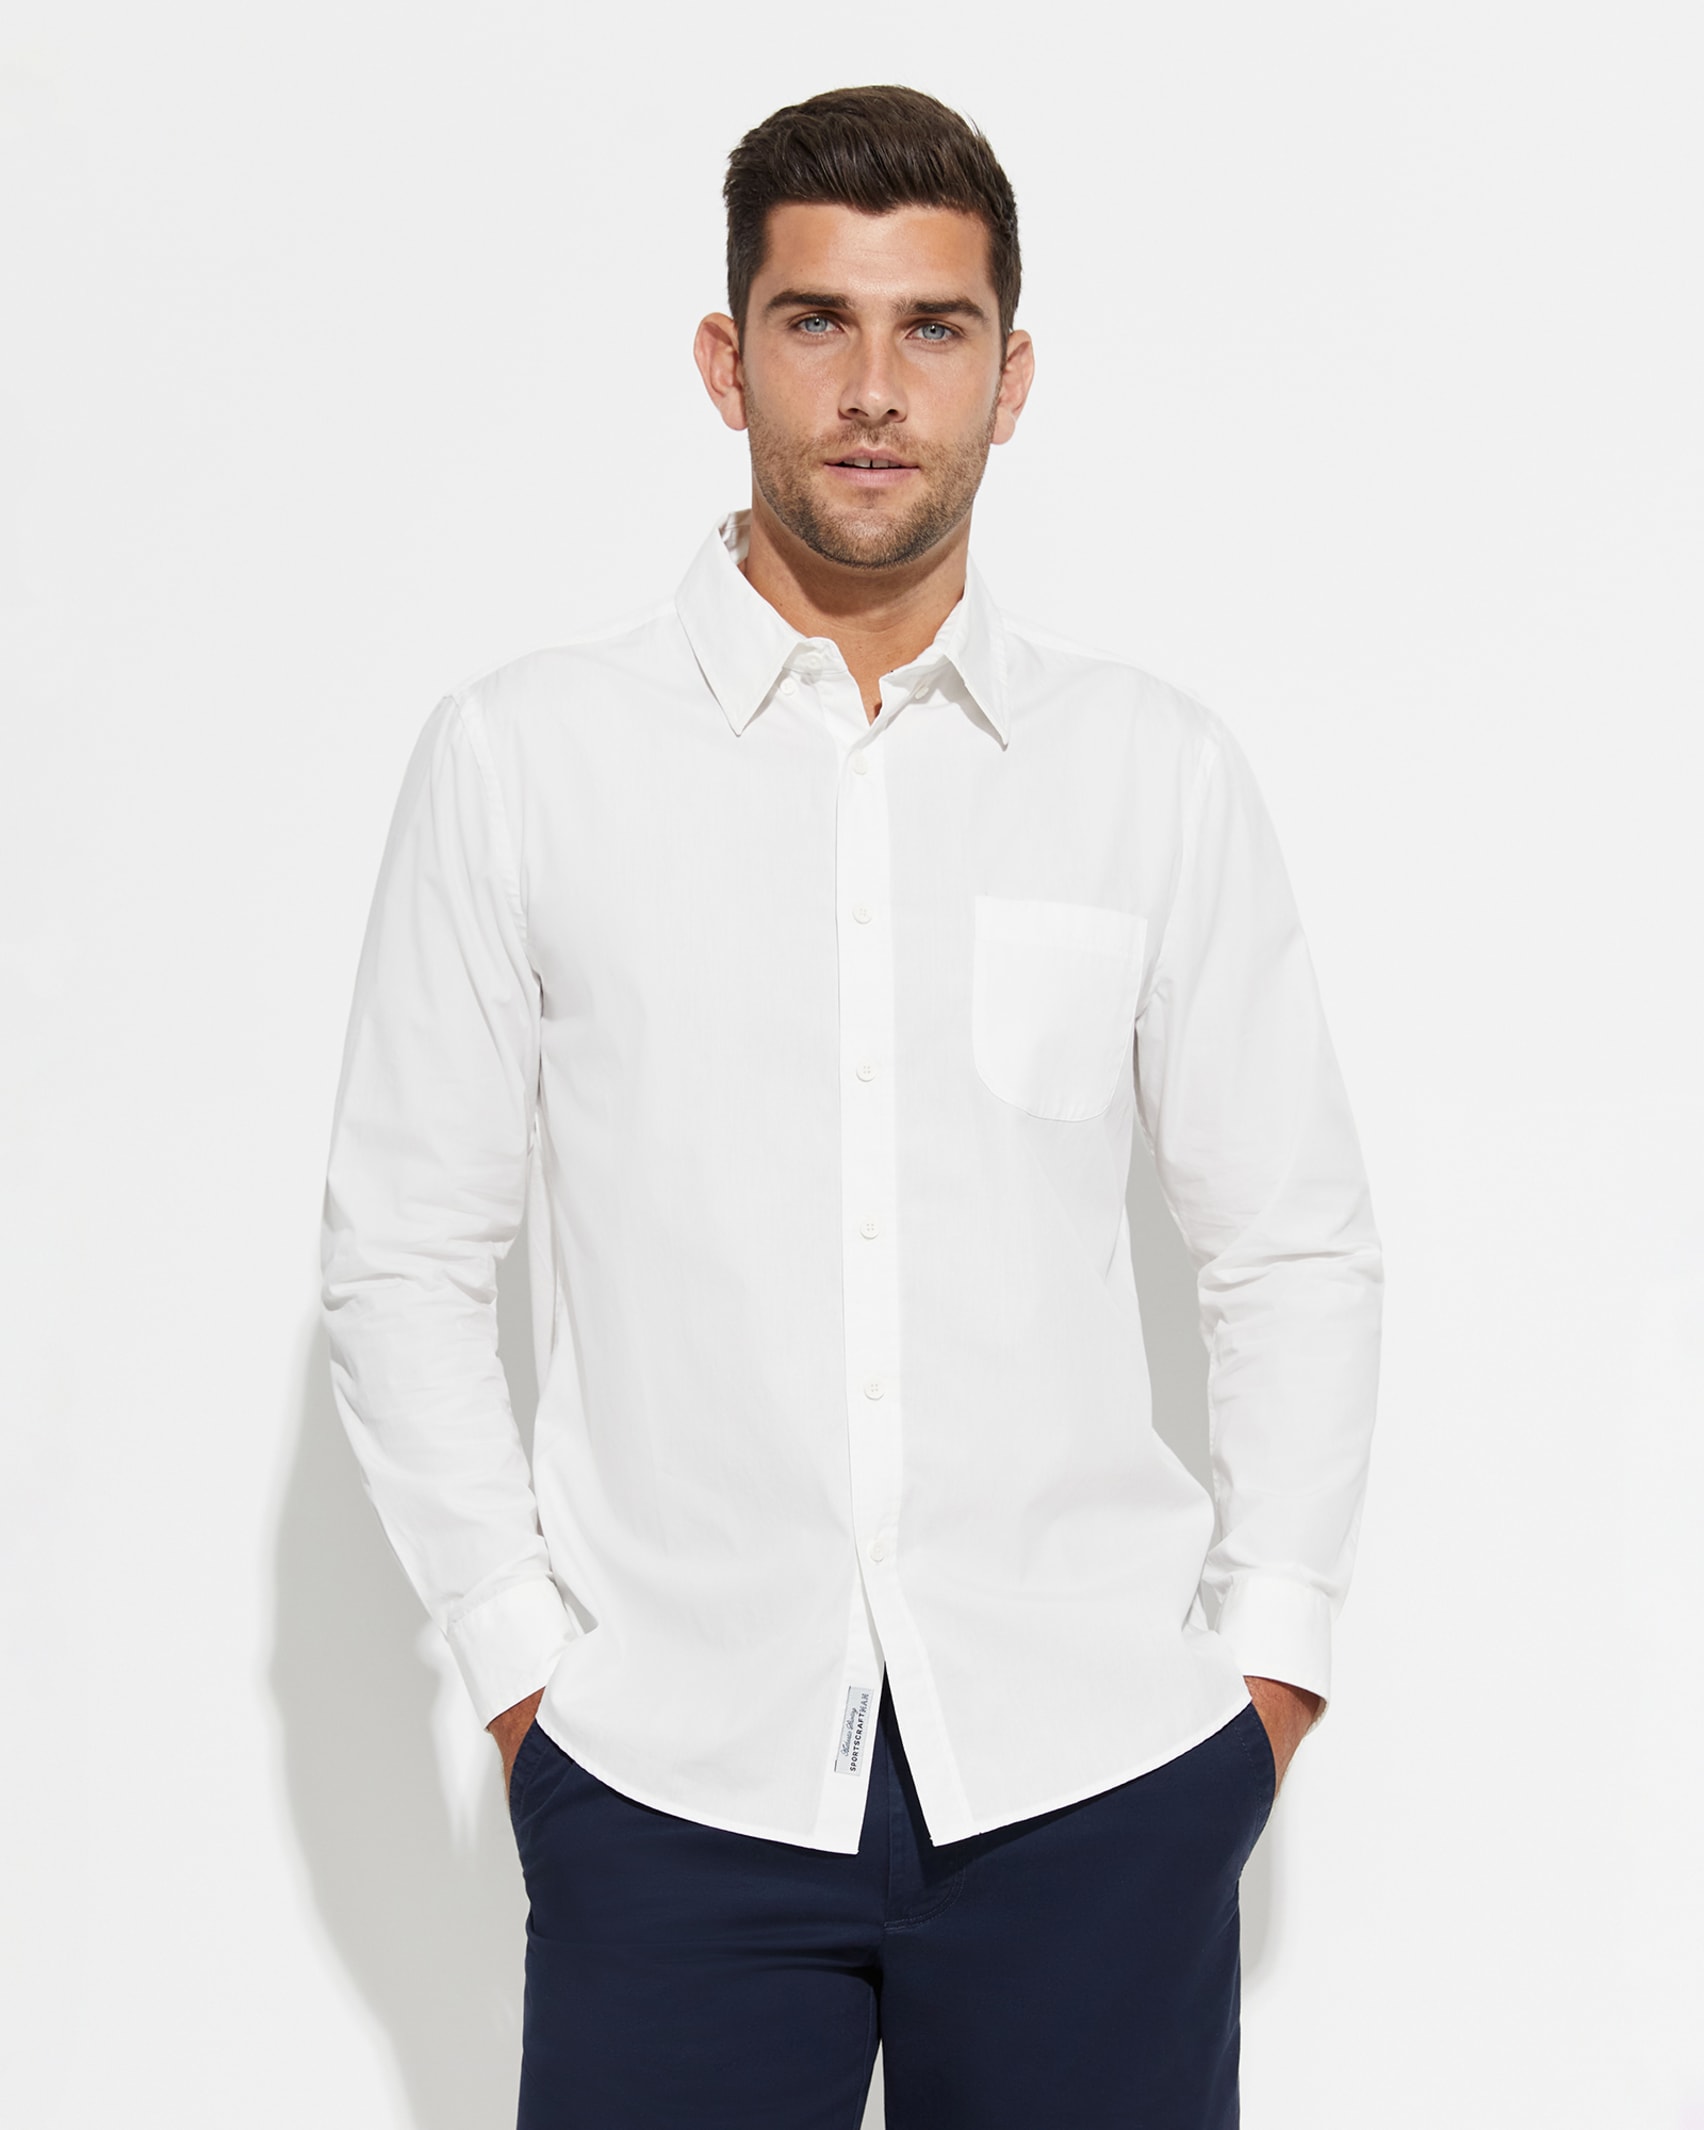 Long Sleeve  Luke Shirt in WHITE